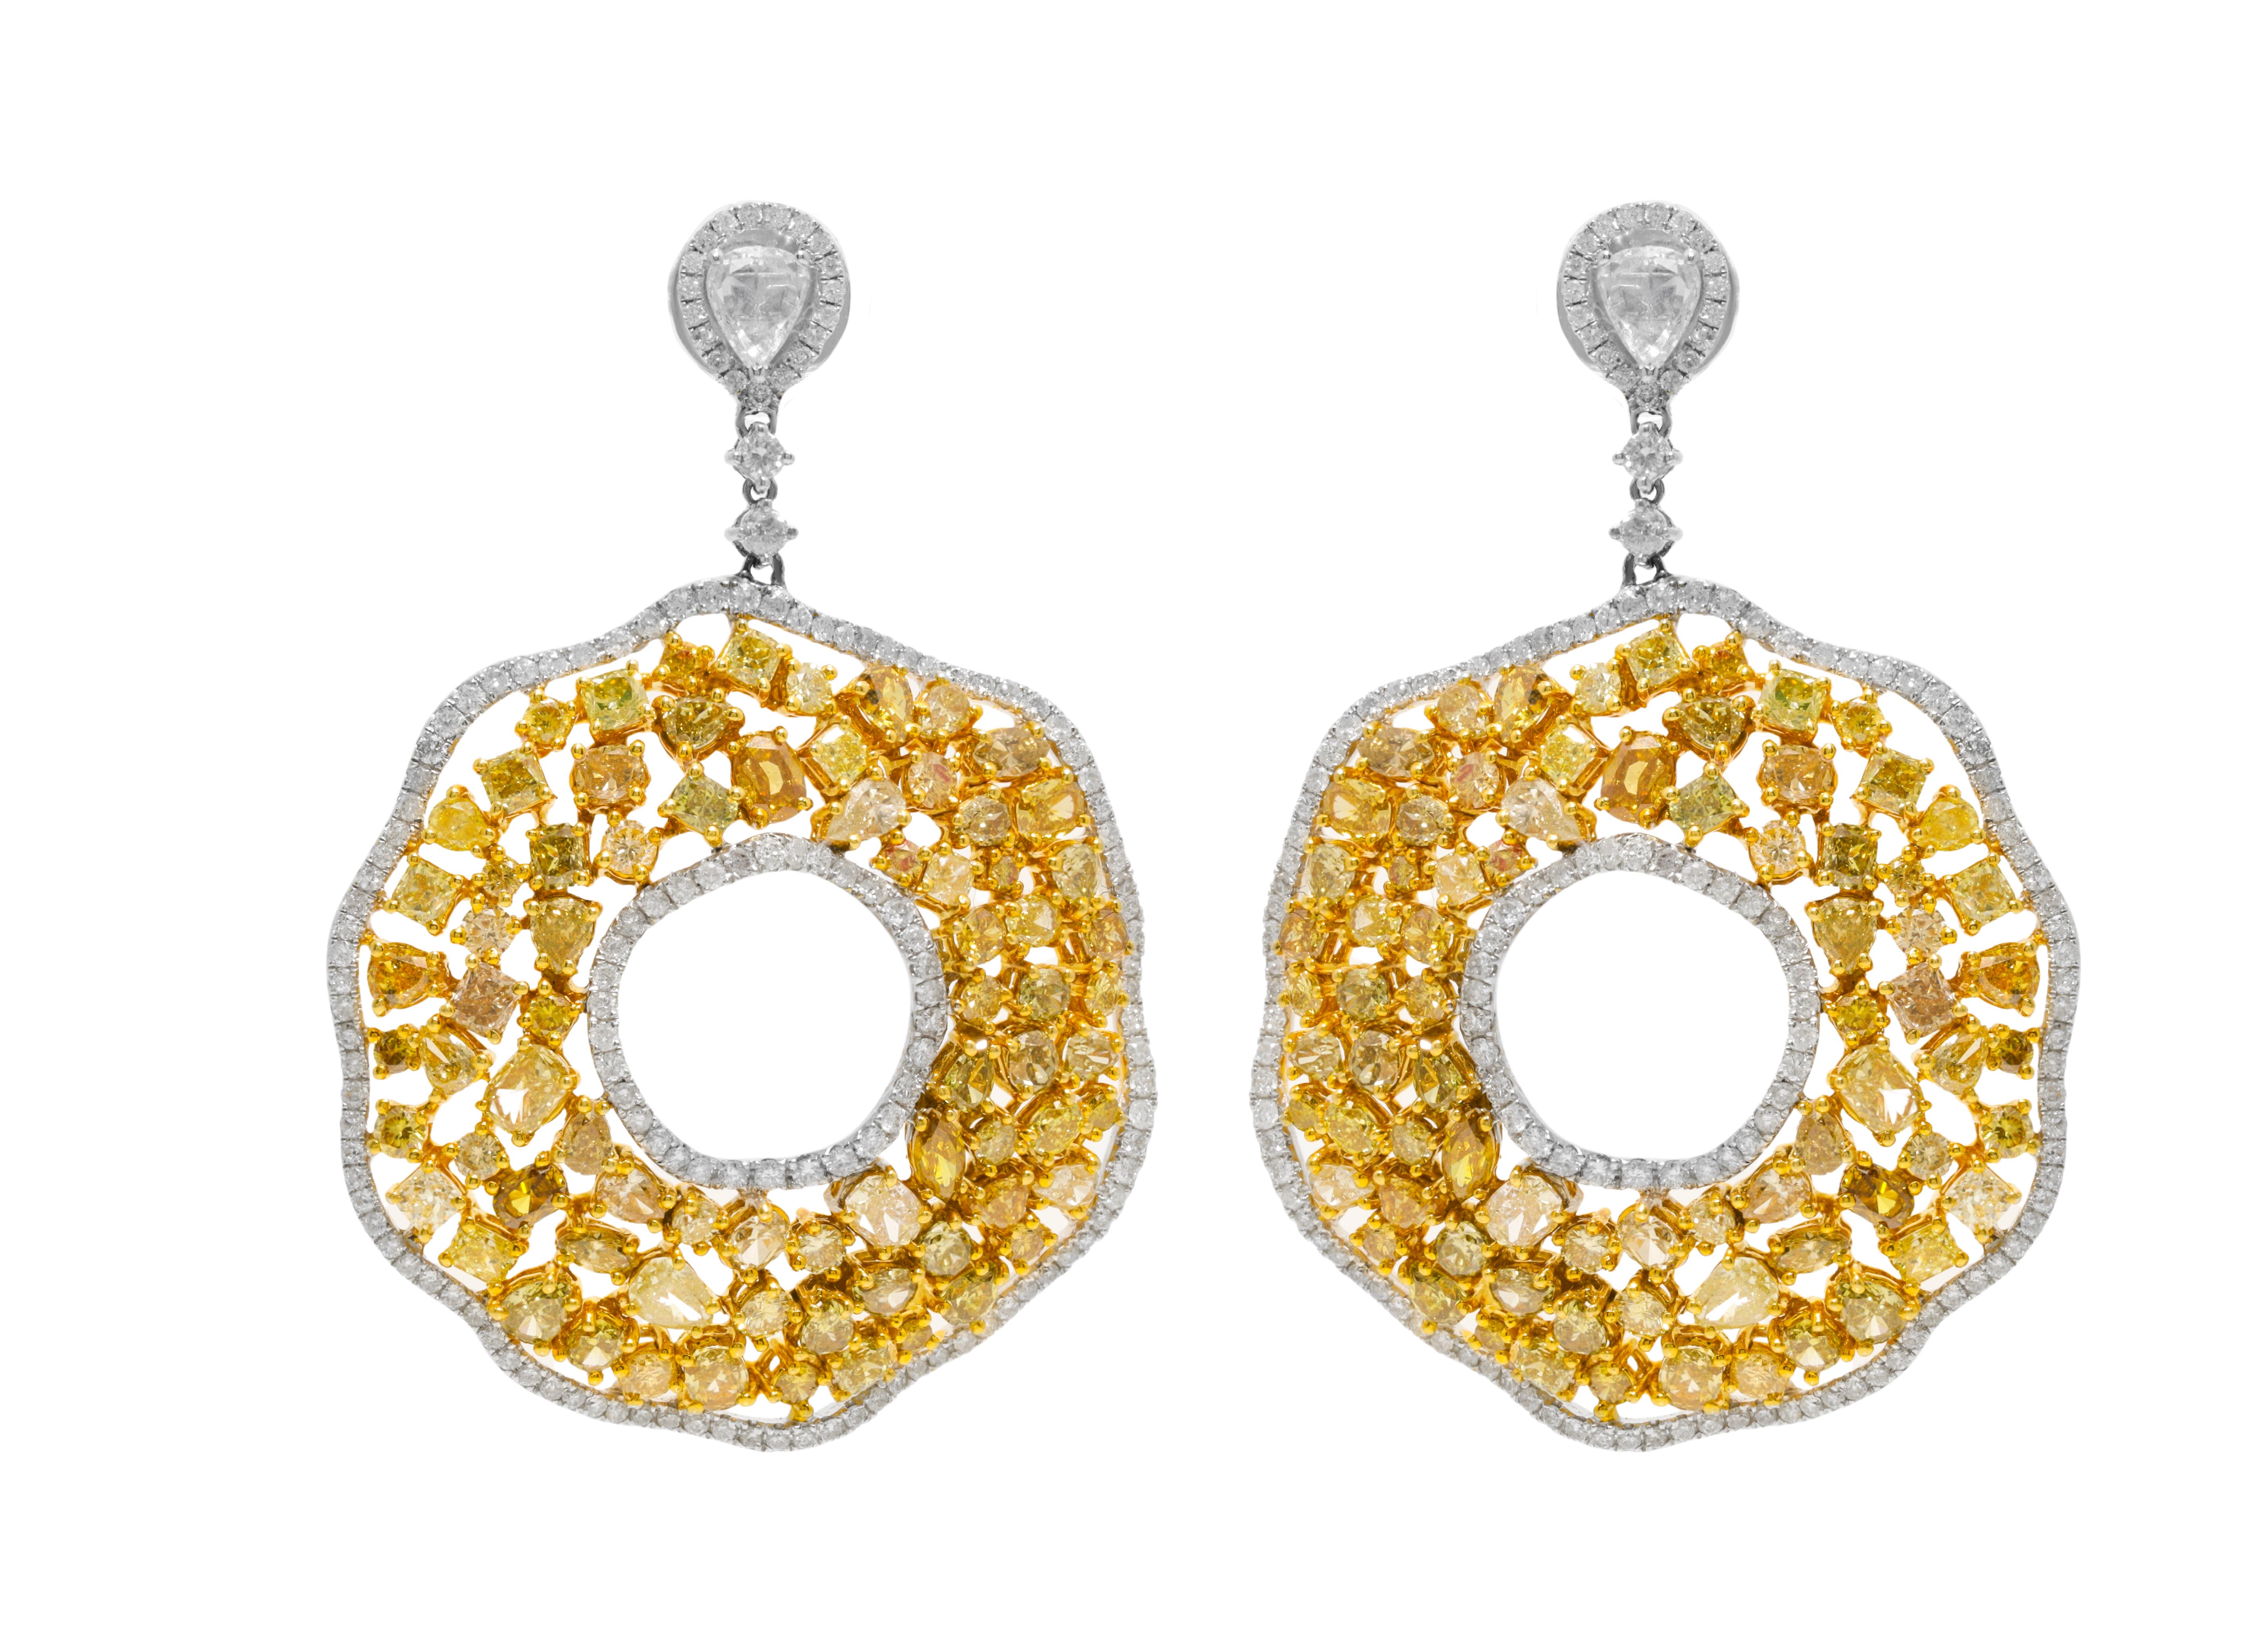  Boucles d'oreilles en or blanc 18 carats ornées de 15,44 cts tw de diamants jaunes de différentes formes.
A&M est un fournisseur de premier plan de bijoux fins de qualité supérieure depuis plus de 35 ans.
Diana M-One est un magasin unique pour tous